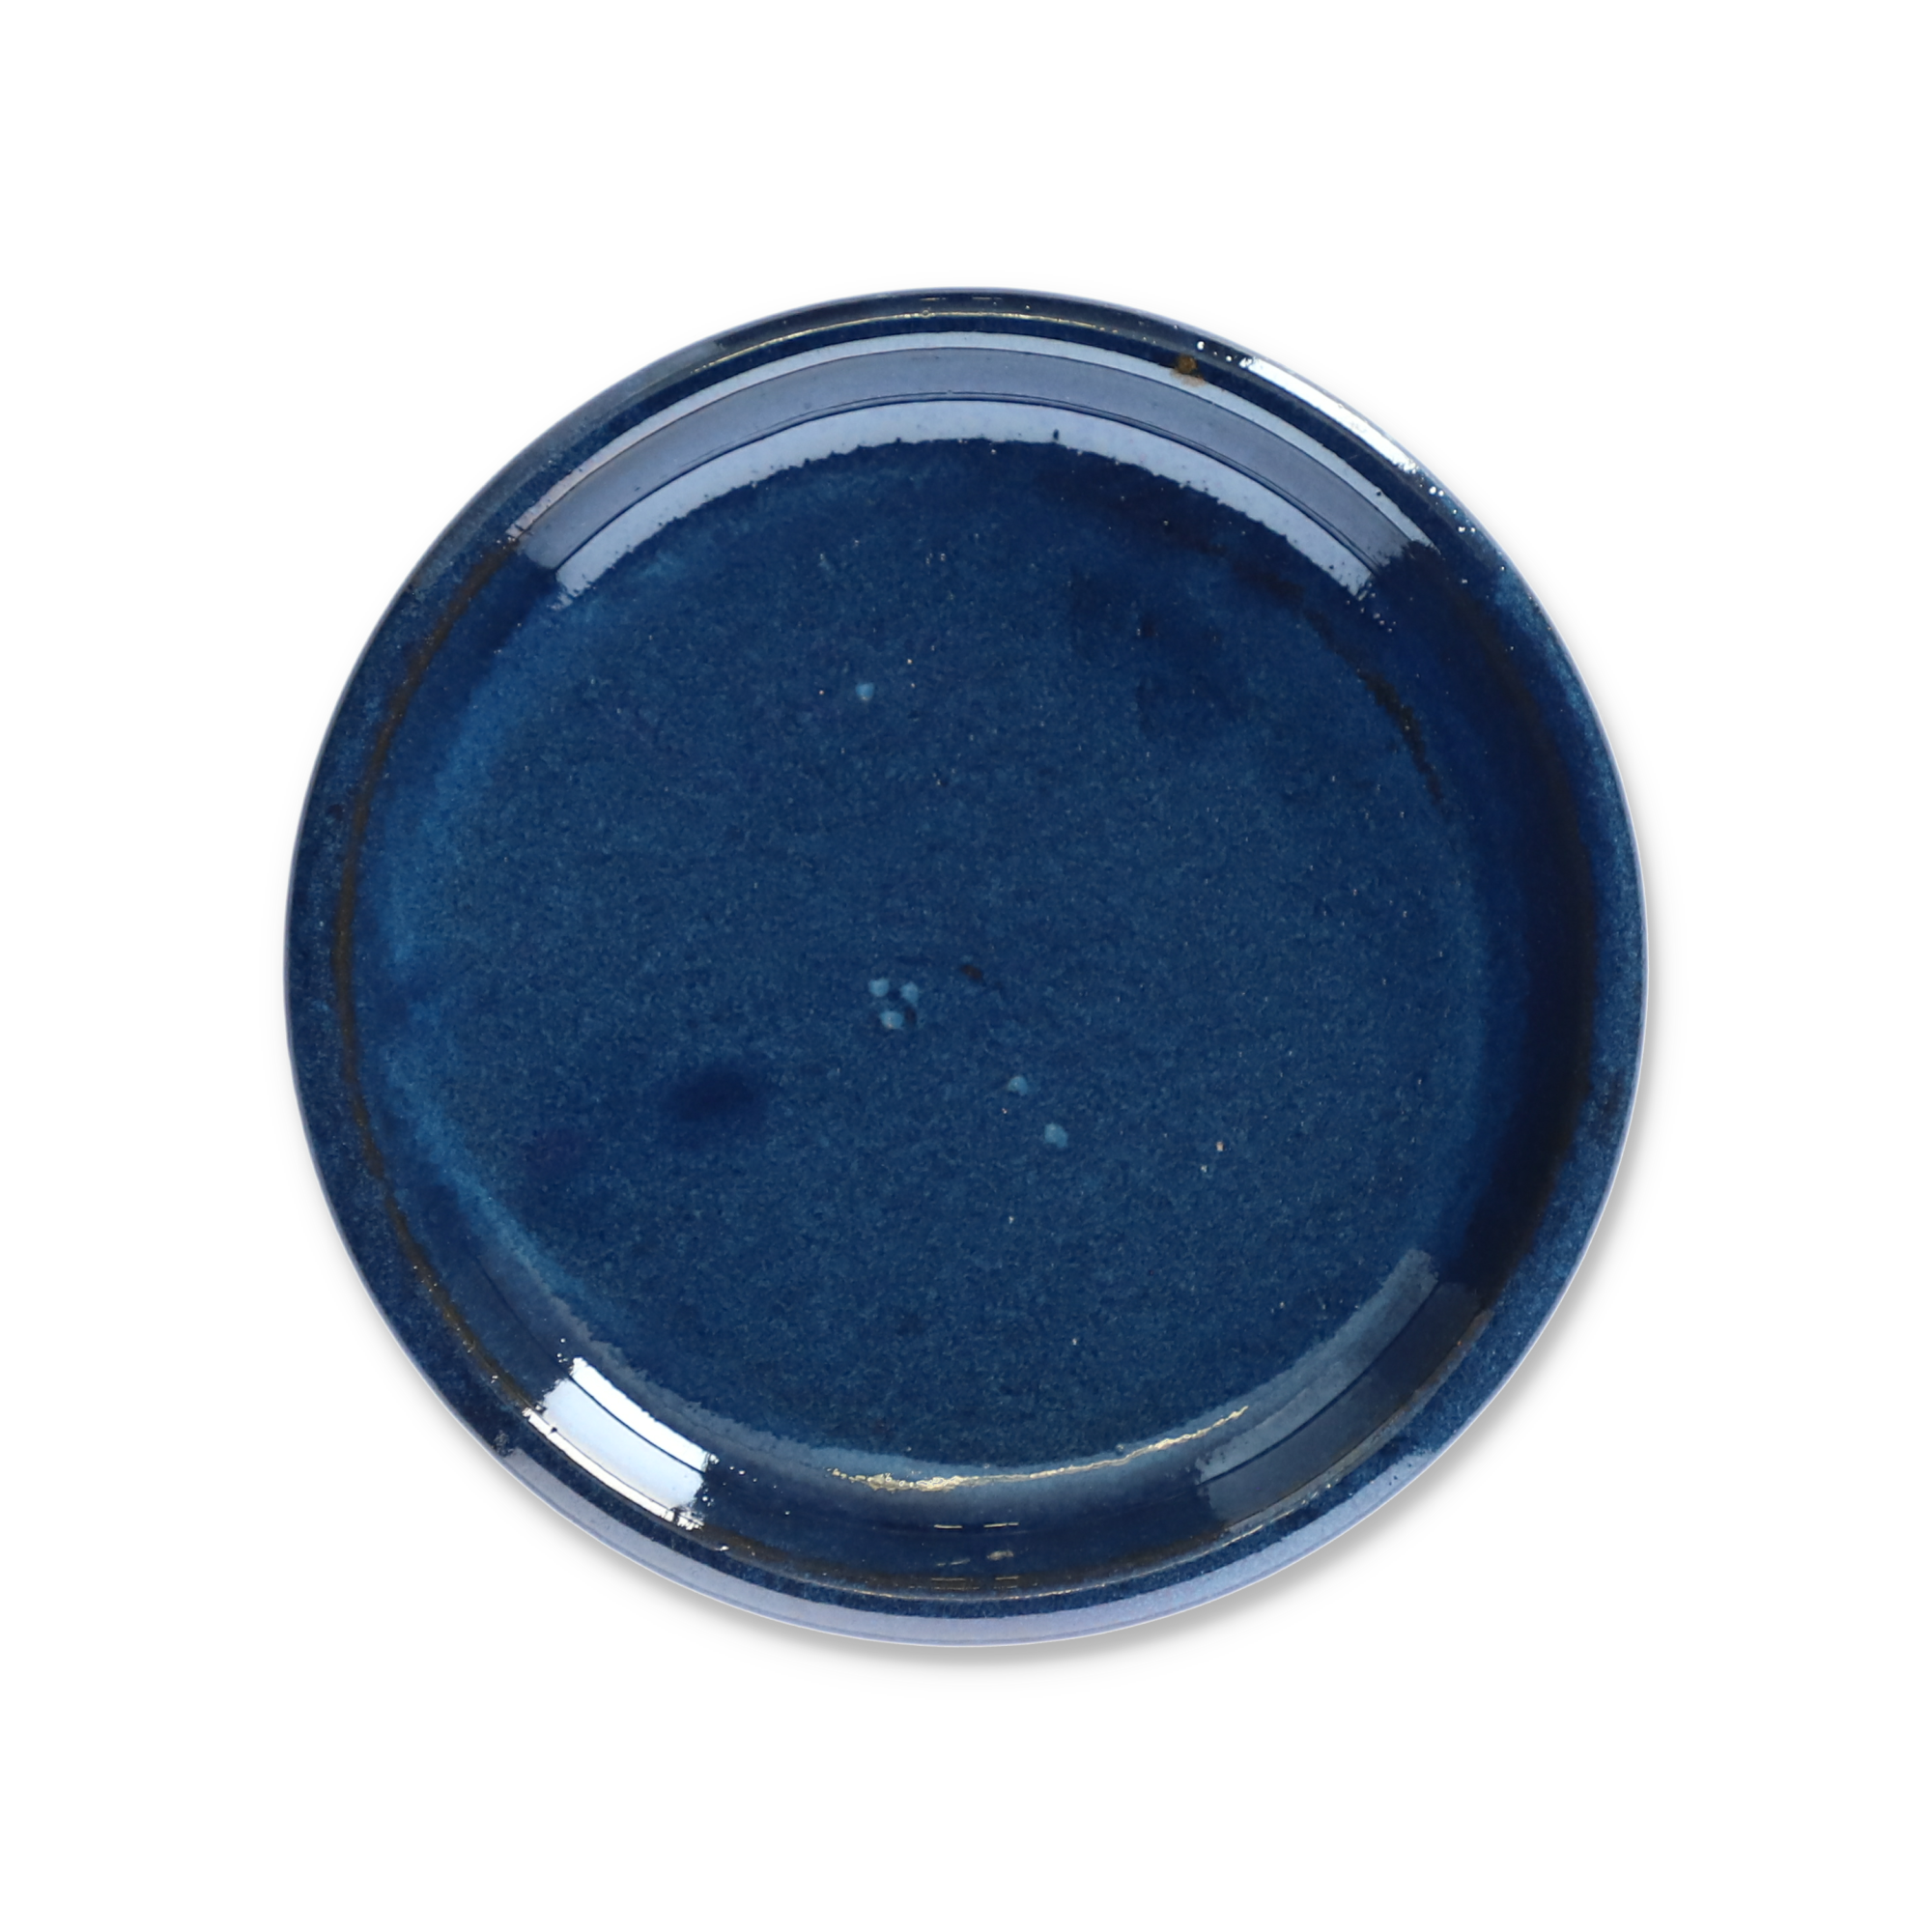 Untersetzer blau-grau Ø 18 cm + product picture